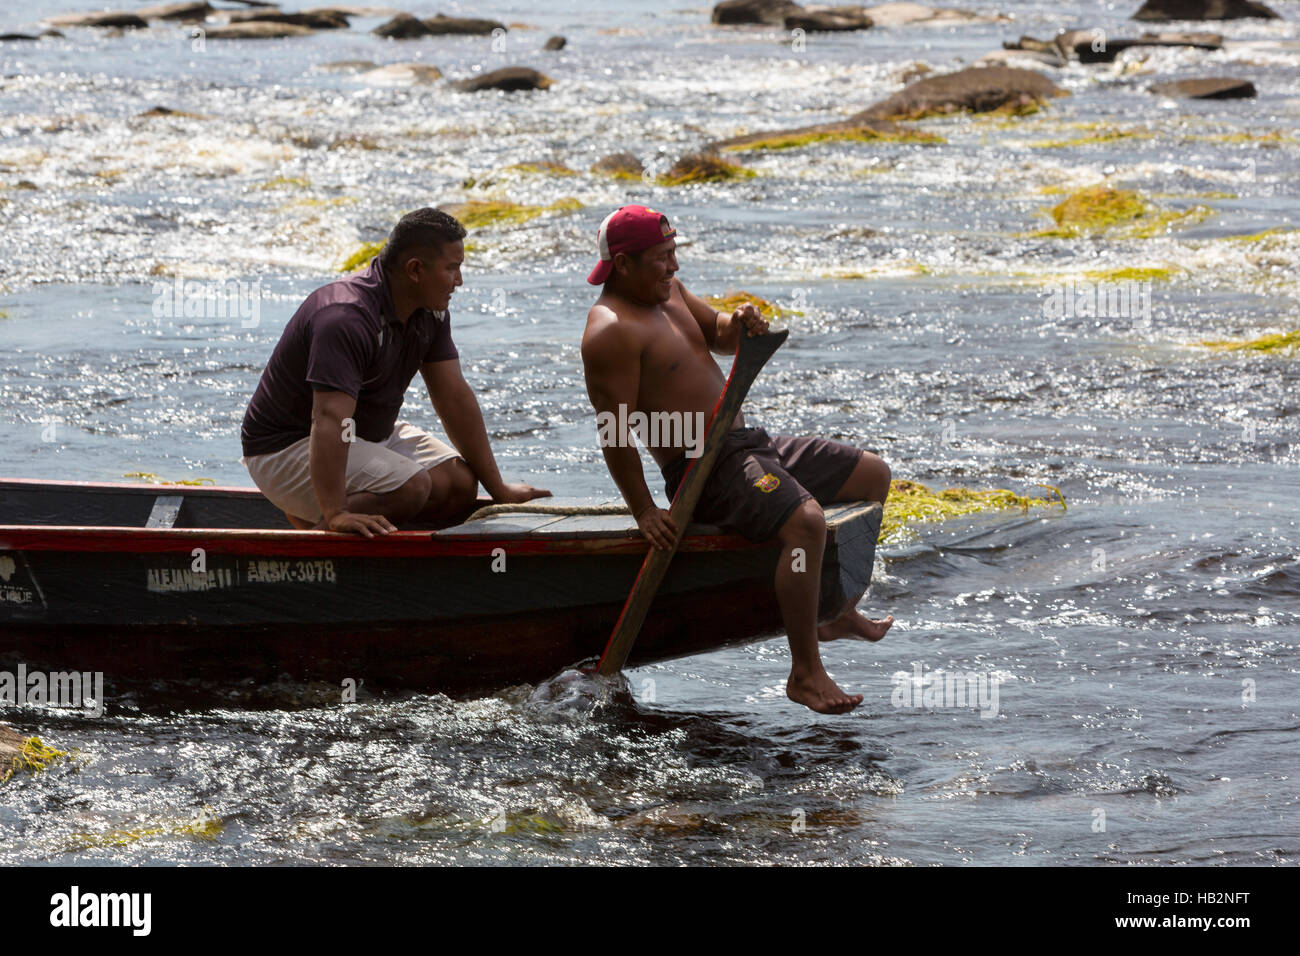 Indian Venezuelan guides at work on canoe, Canaima, Venezuela Stock Photo